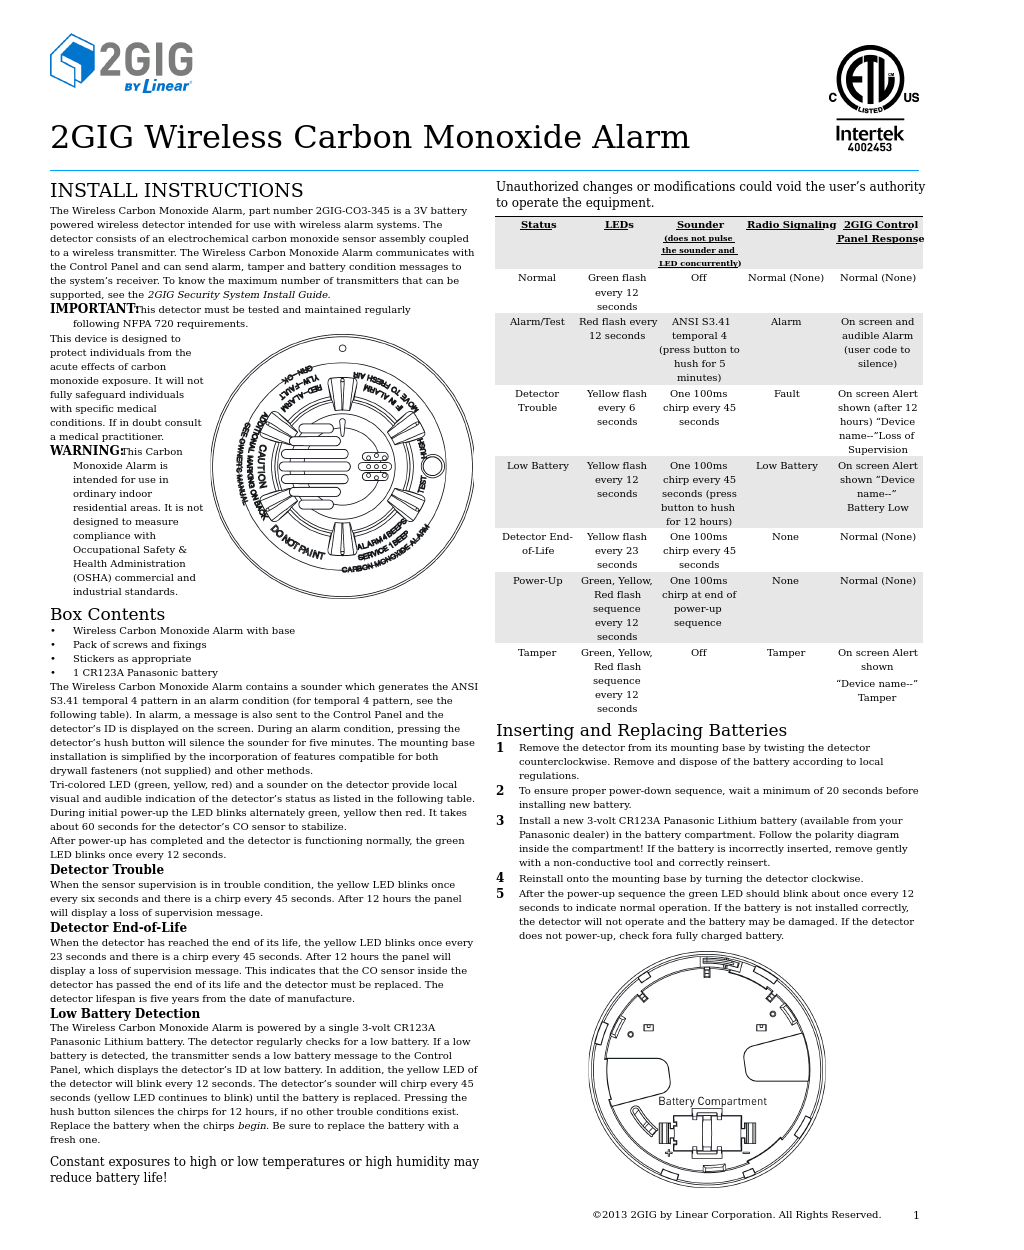 CO3-345 Carbon Monoxide Detector